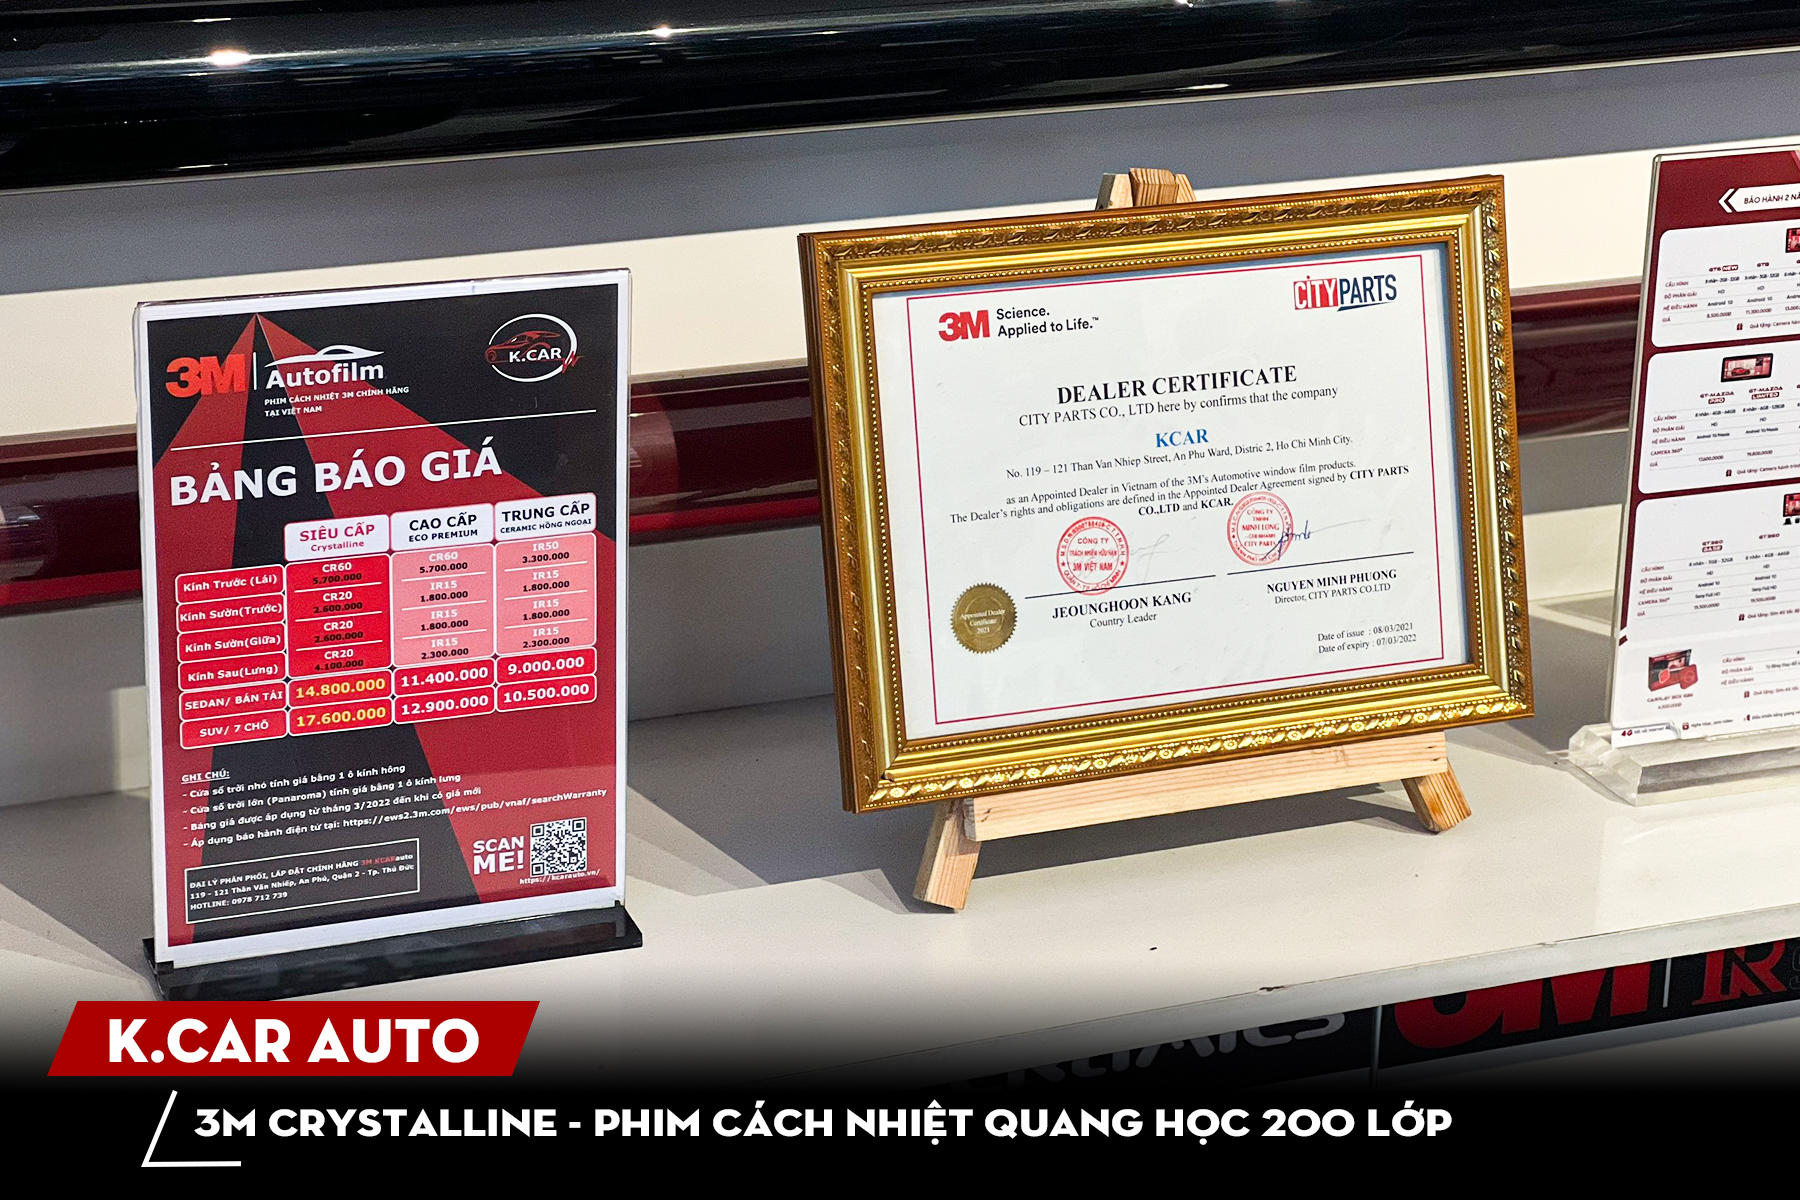 K.CAR Auto đơn vị được cấp chứng chỉ tay nghề, chứng chỉ kinh doanh lắp đặt dòng phim 3M Crystalline